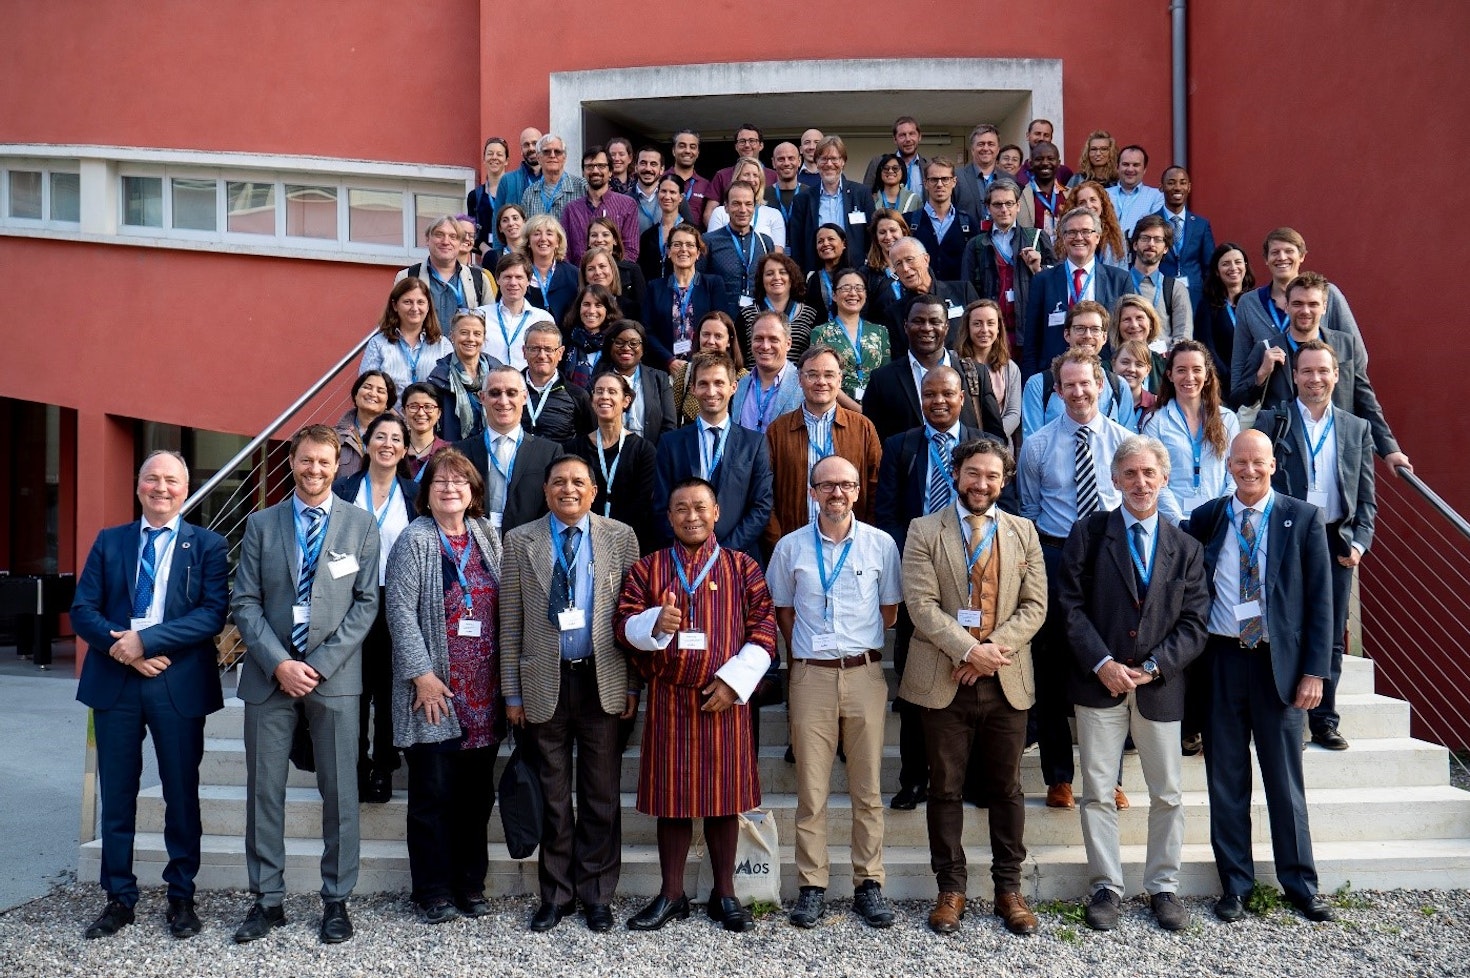 Vom 17. bis 19. Oktober 2018 veranstaltete Eurac Research den GLOMOS Kick-off Workshop, eine internationale Konferenz mit 150 Experten aus Forschung, Praxis und UN-Vertretung. Der Workshop befasste sich mit dem Thema "Global Mountain Safeguard Research".